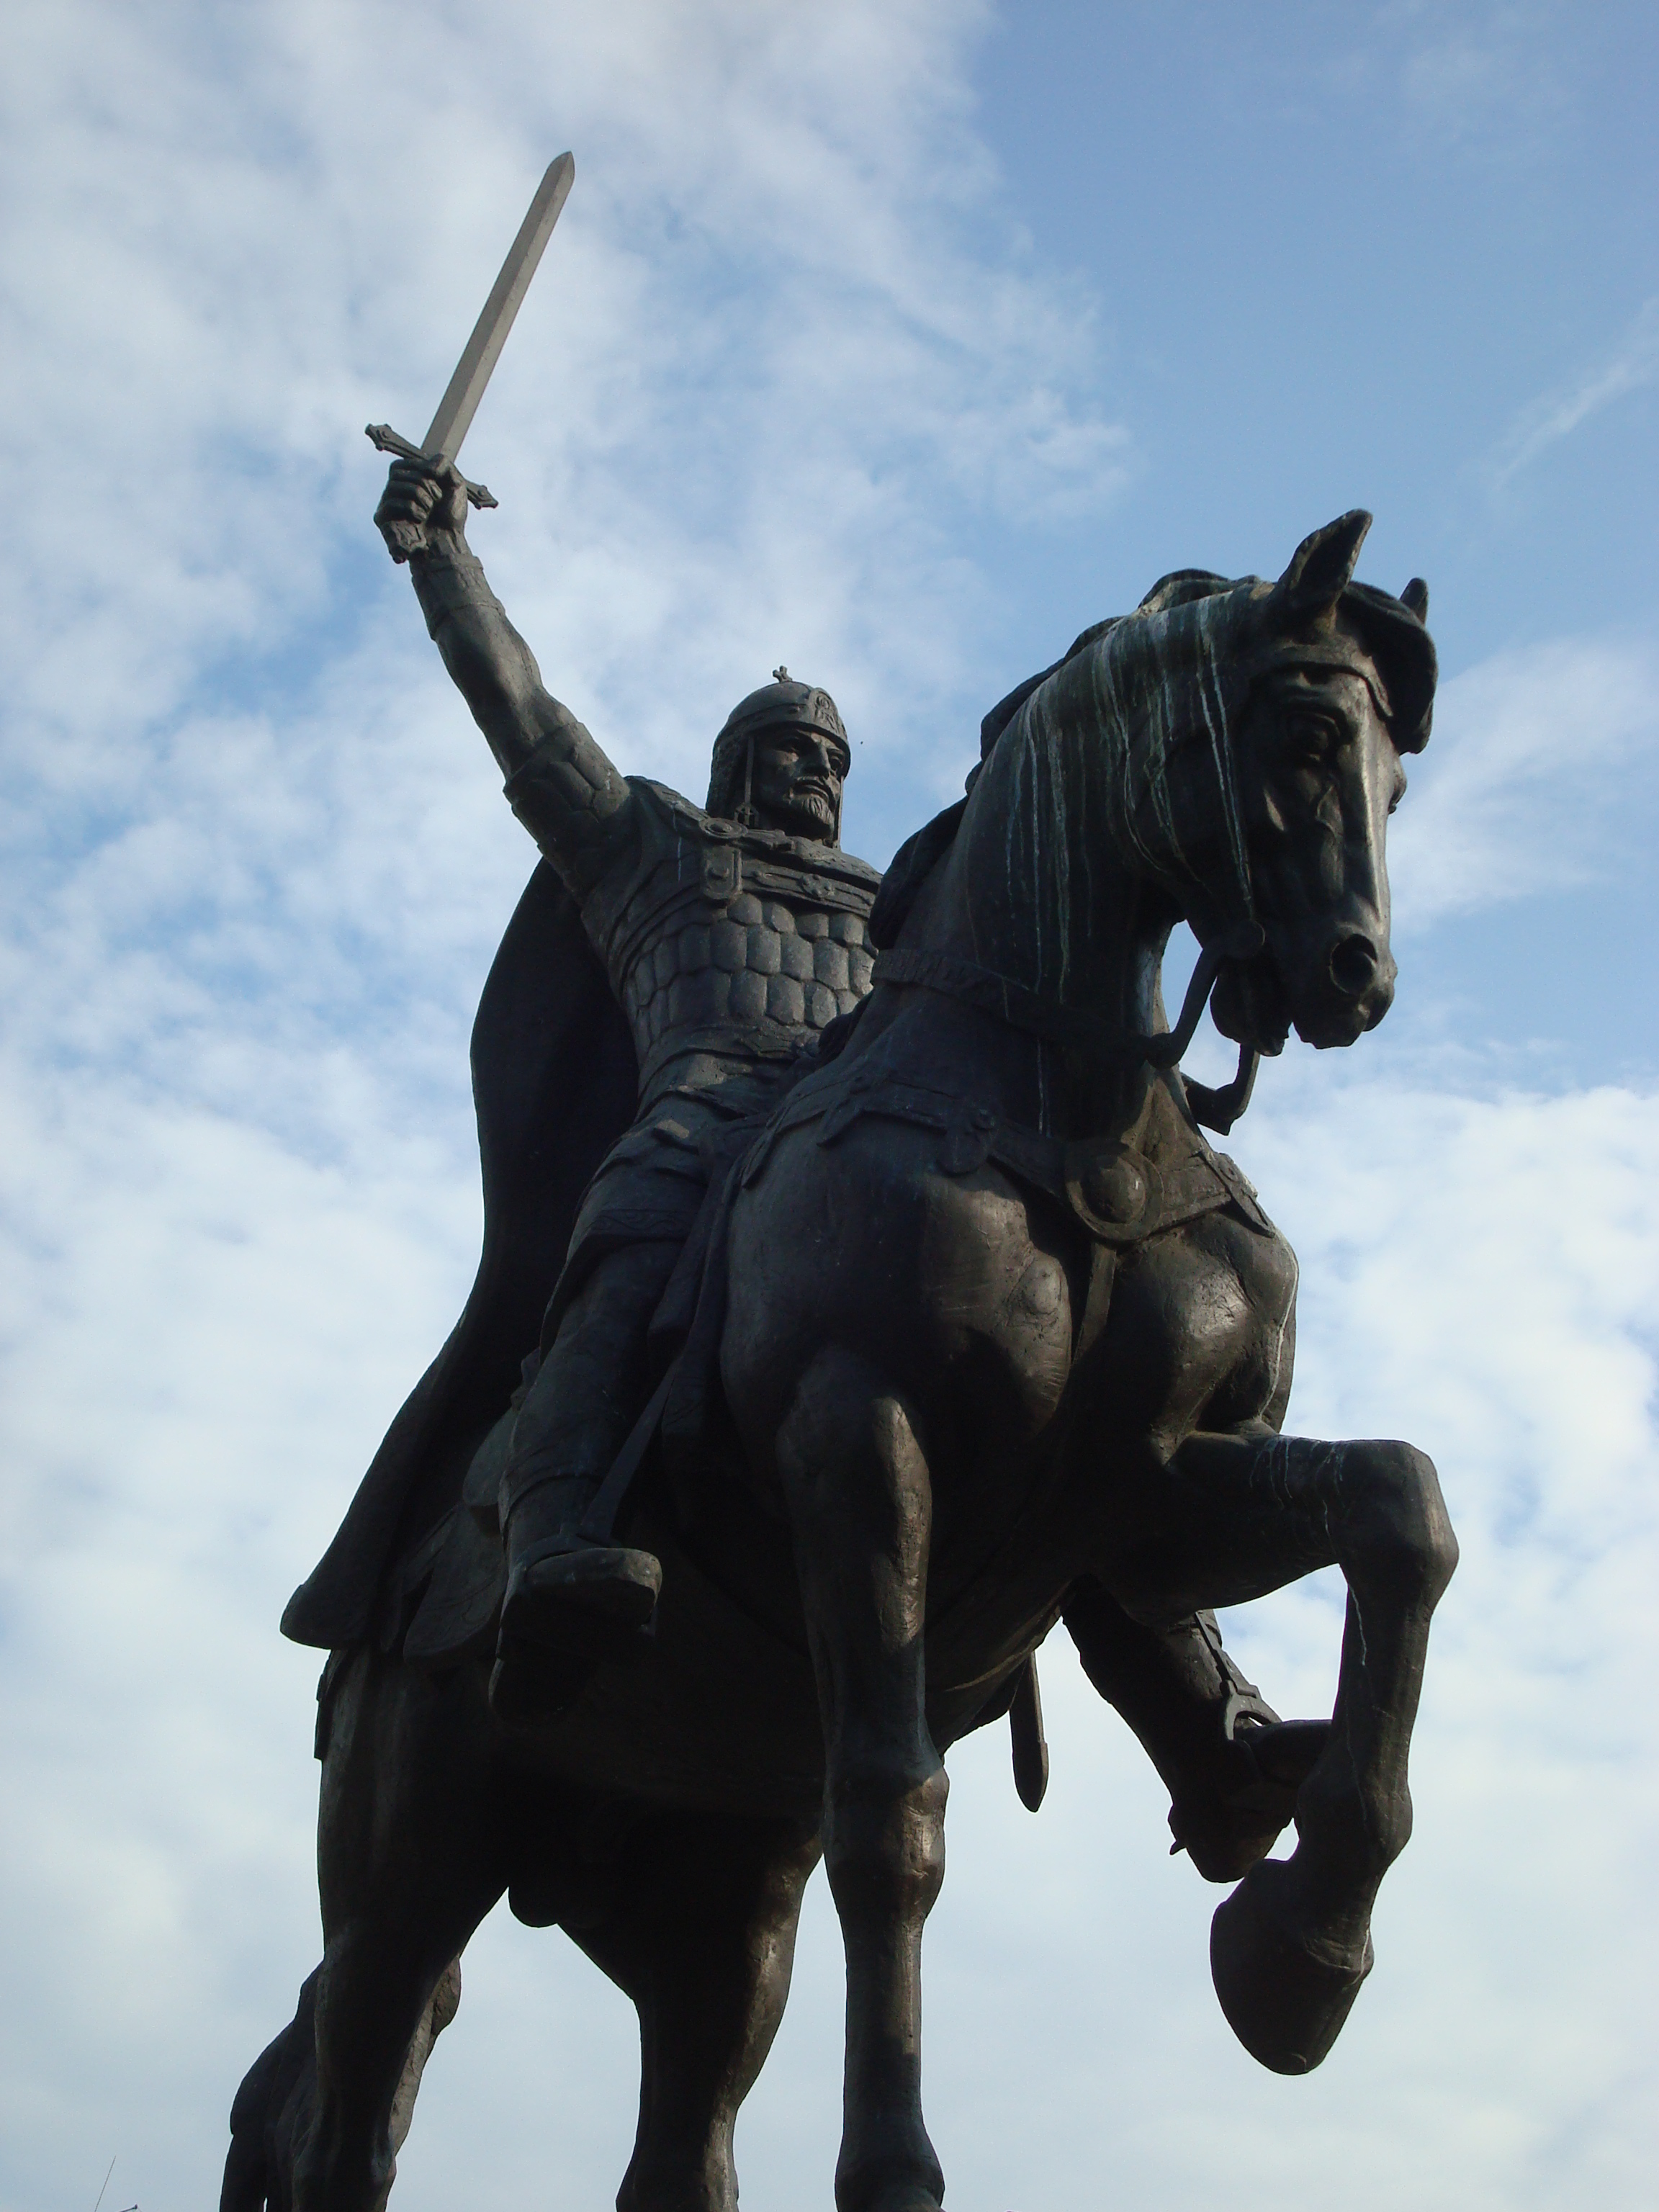 King kaloyan monument - bulgaria photo